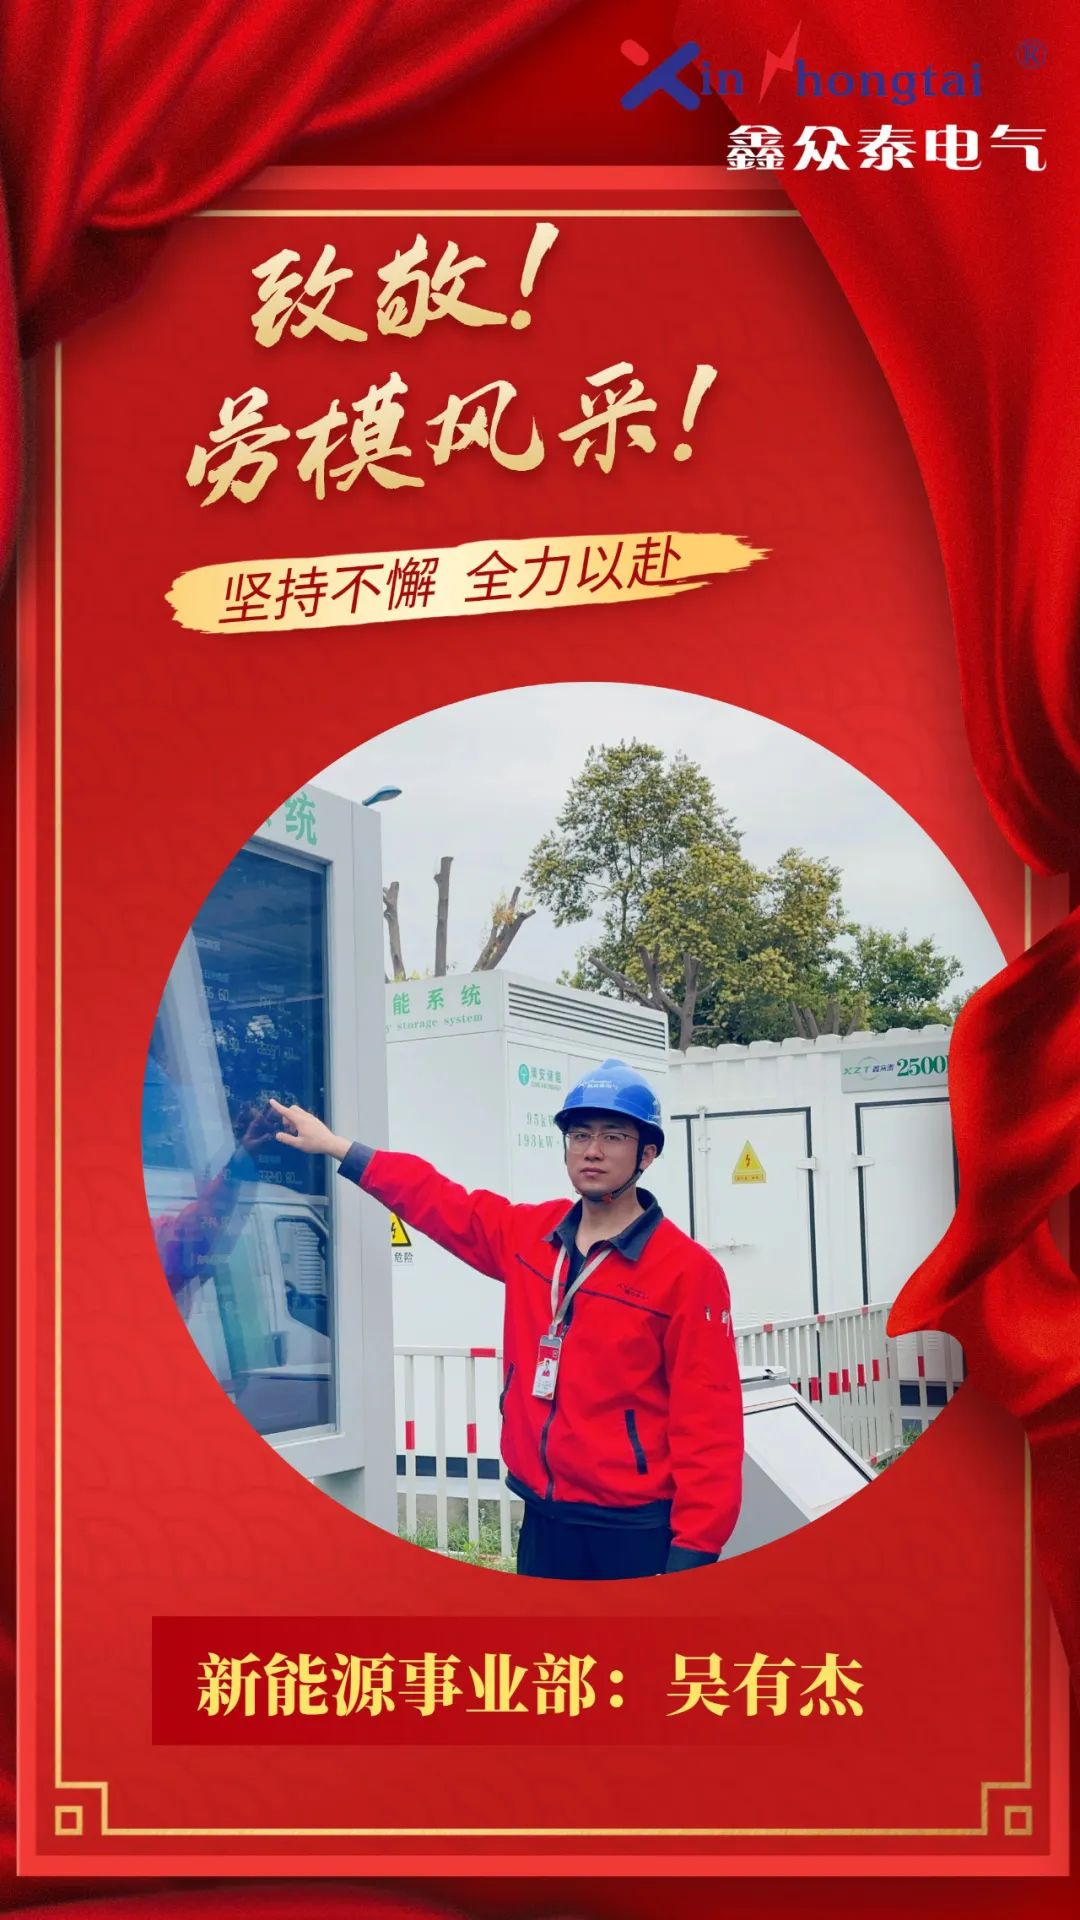 致敬勞模 I 鑫眾泰電氣2023年首屆勞模表彰來了！